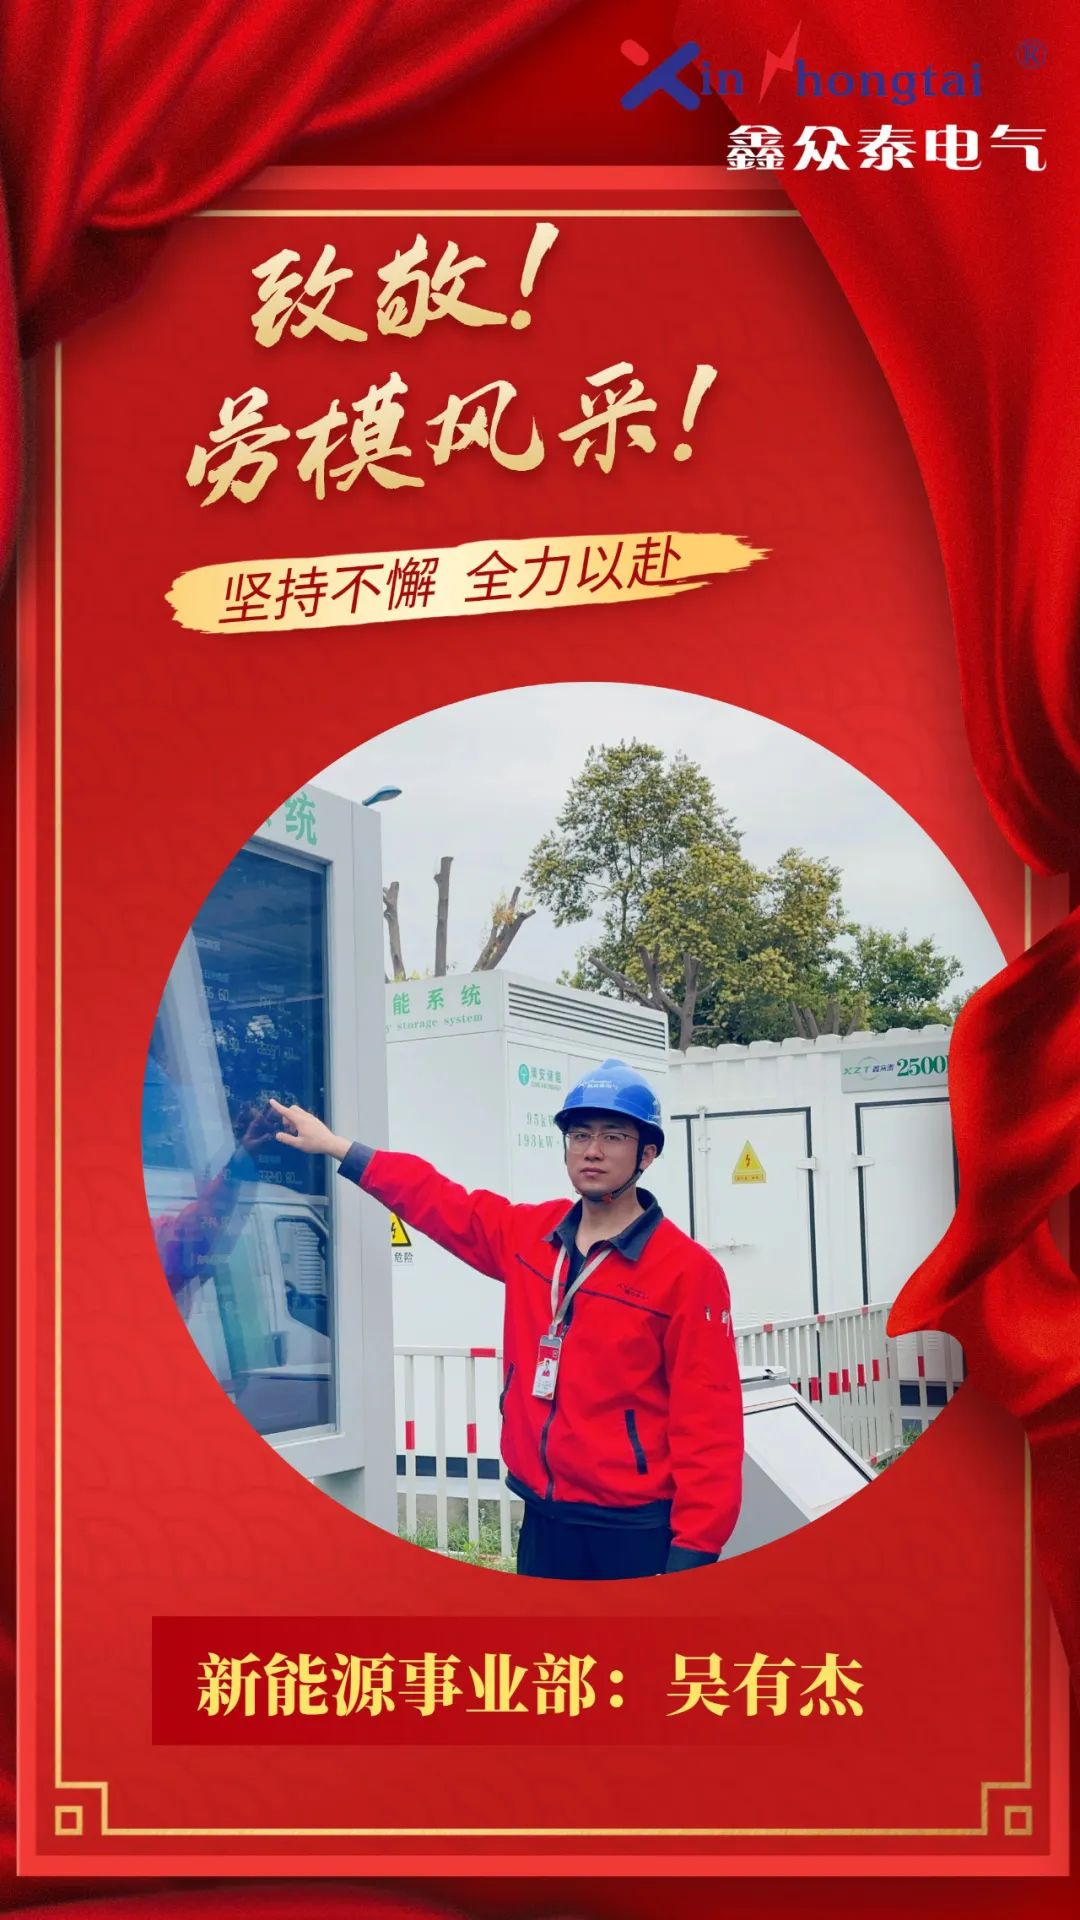 致敬勞模 I 鑫眾泰電氣2023年首屆勞模表彰來了！